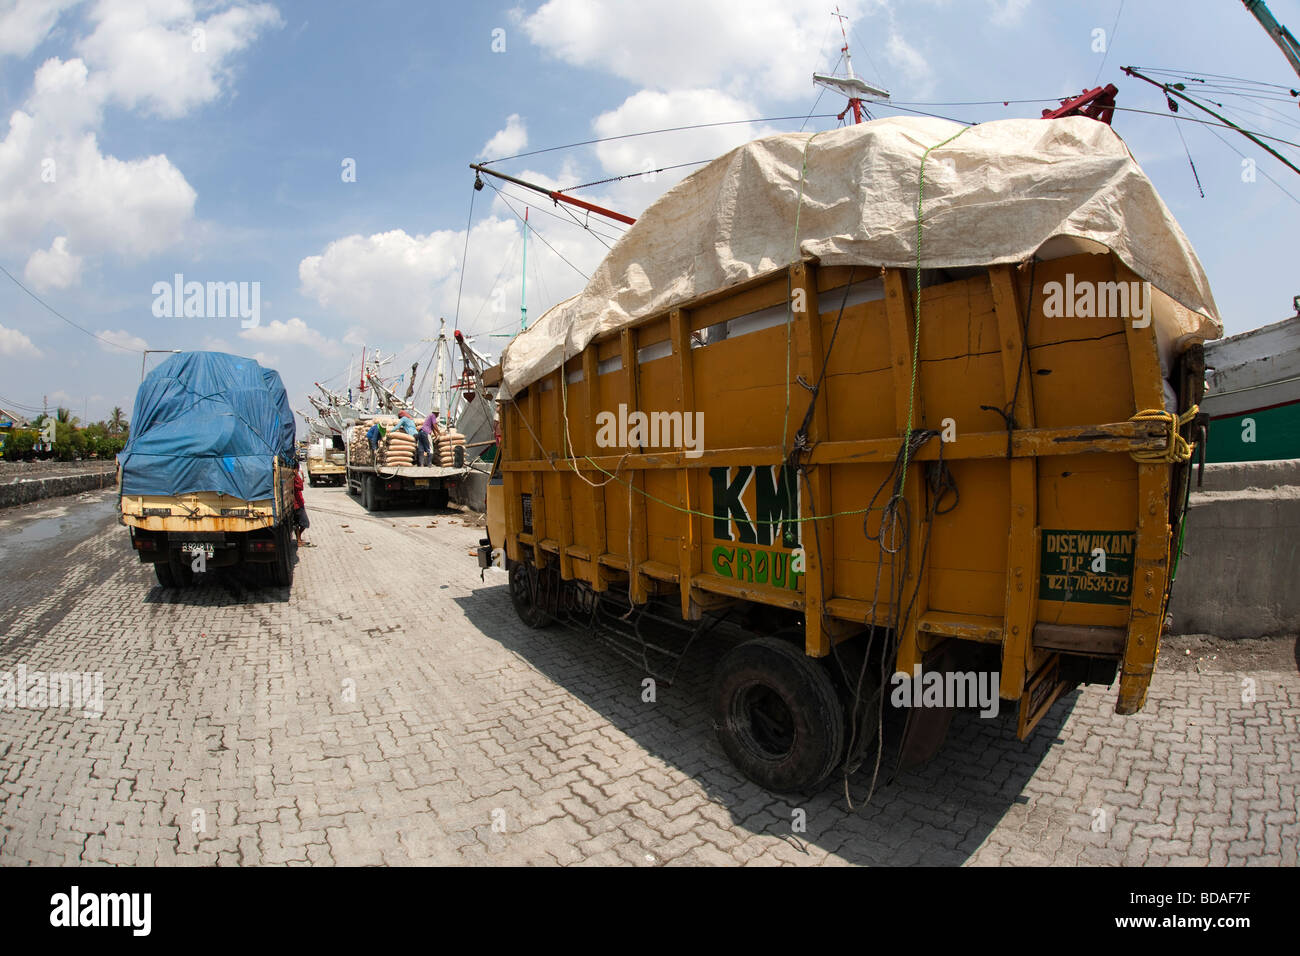 Indonesia Jakarta Java vecchia Batavia Sunda Kelapa camion caricato con sacchi di cemento in attesa per lo scarico Foto Stock